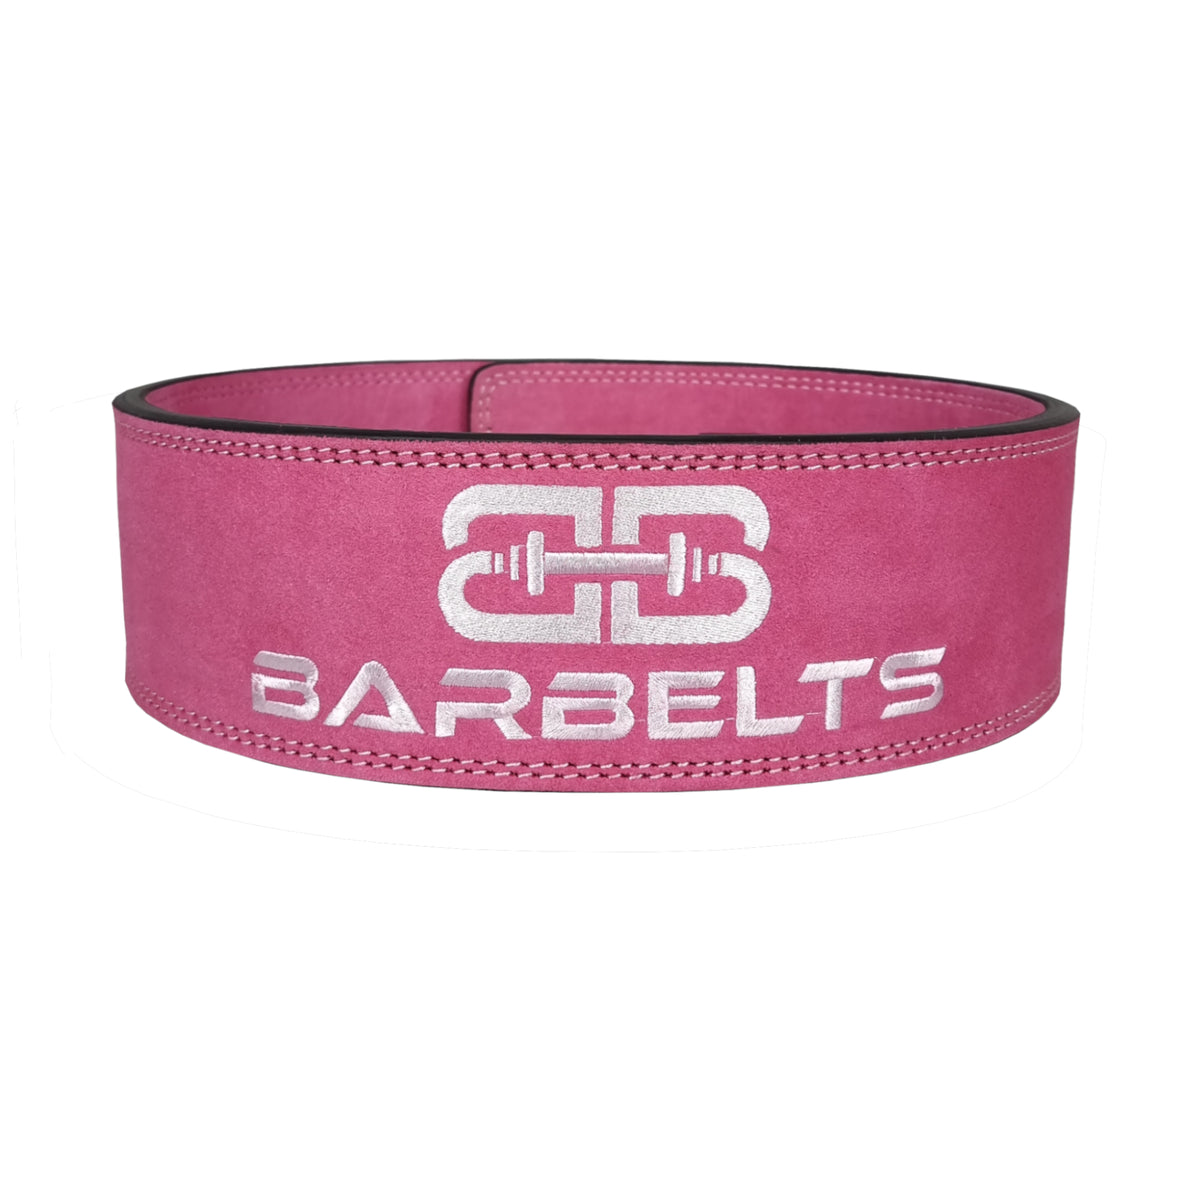 Barbelts Rodilleras de powerlifting 7mm - ónix